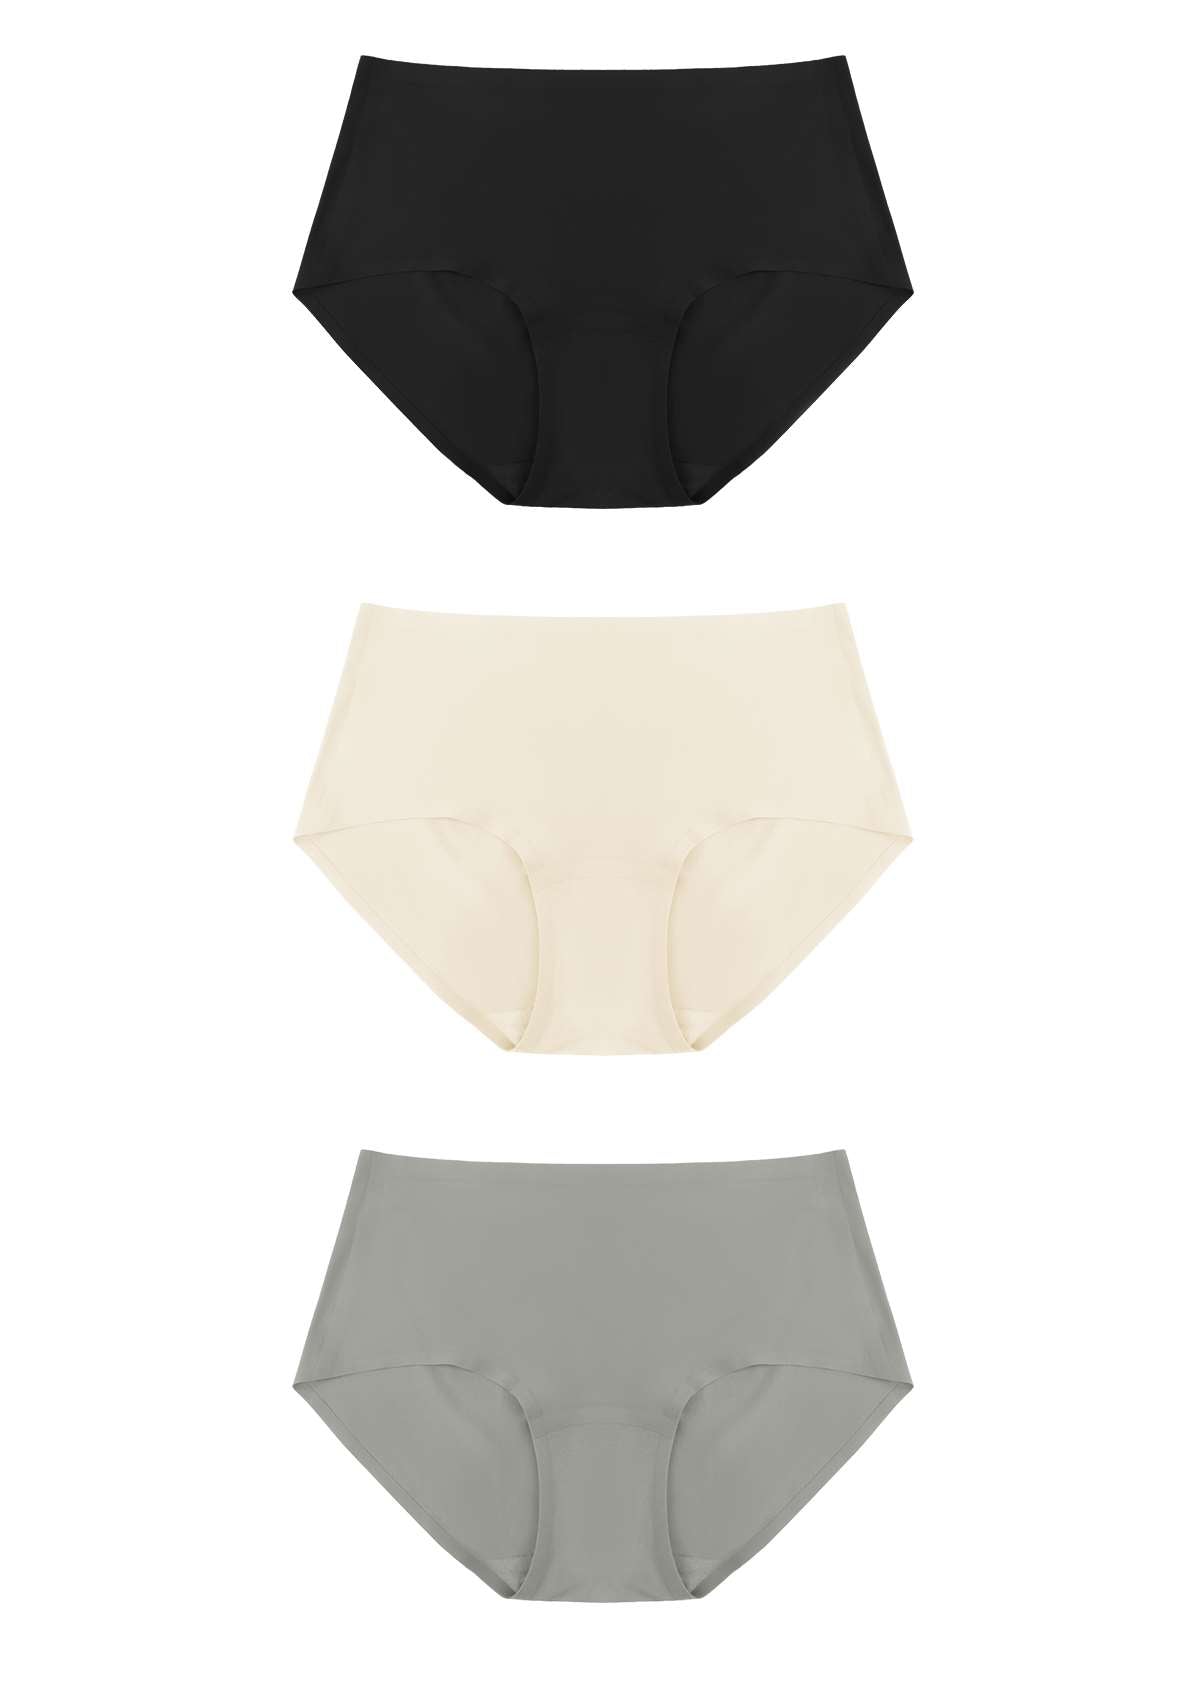 HSIA FlexiFit Soft Stretch Seamless Brief Underwear Bundle - 3 Packs/$15 / 2XL-4XL / Black+Peach Beige+Gray